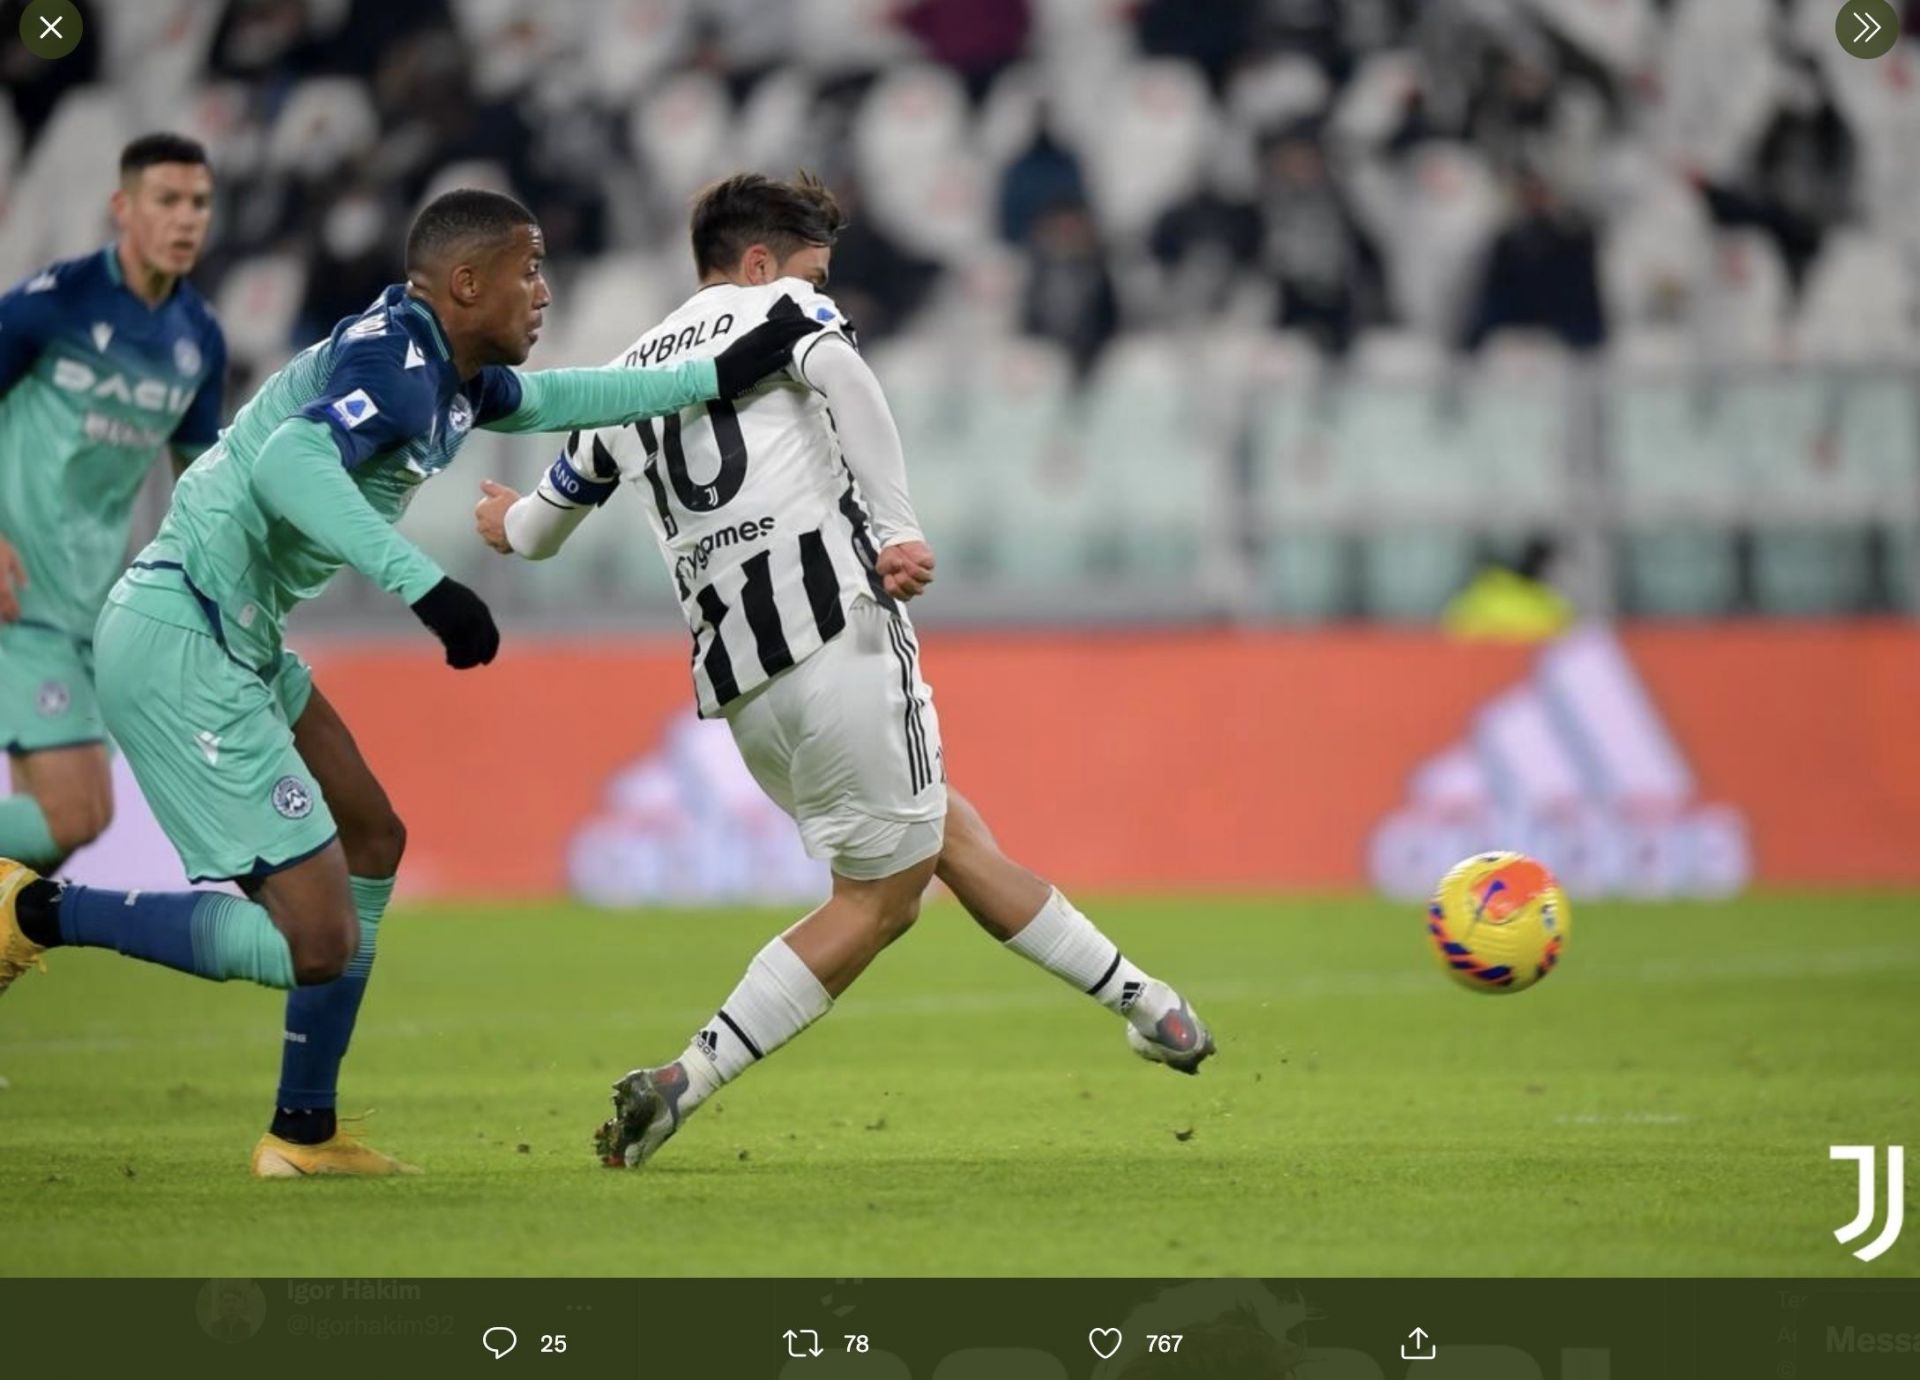 Hasil Liga Italia: Juventus dan Lazio Kompak Menang